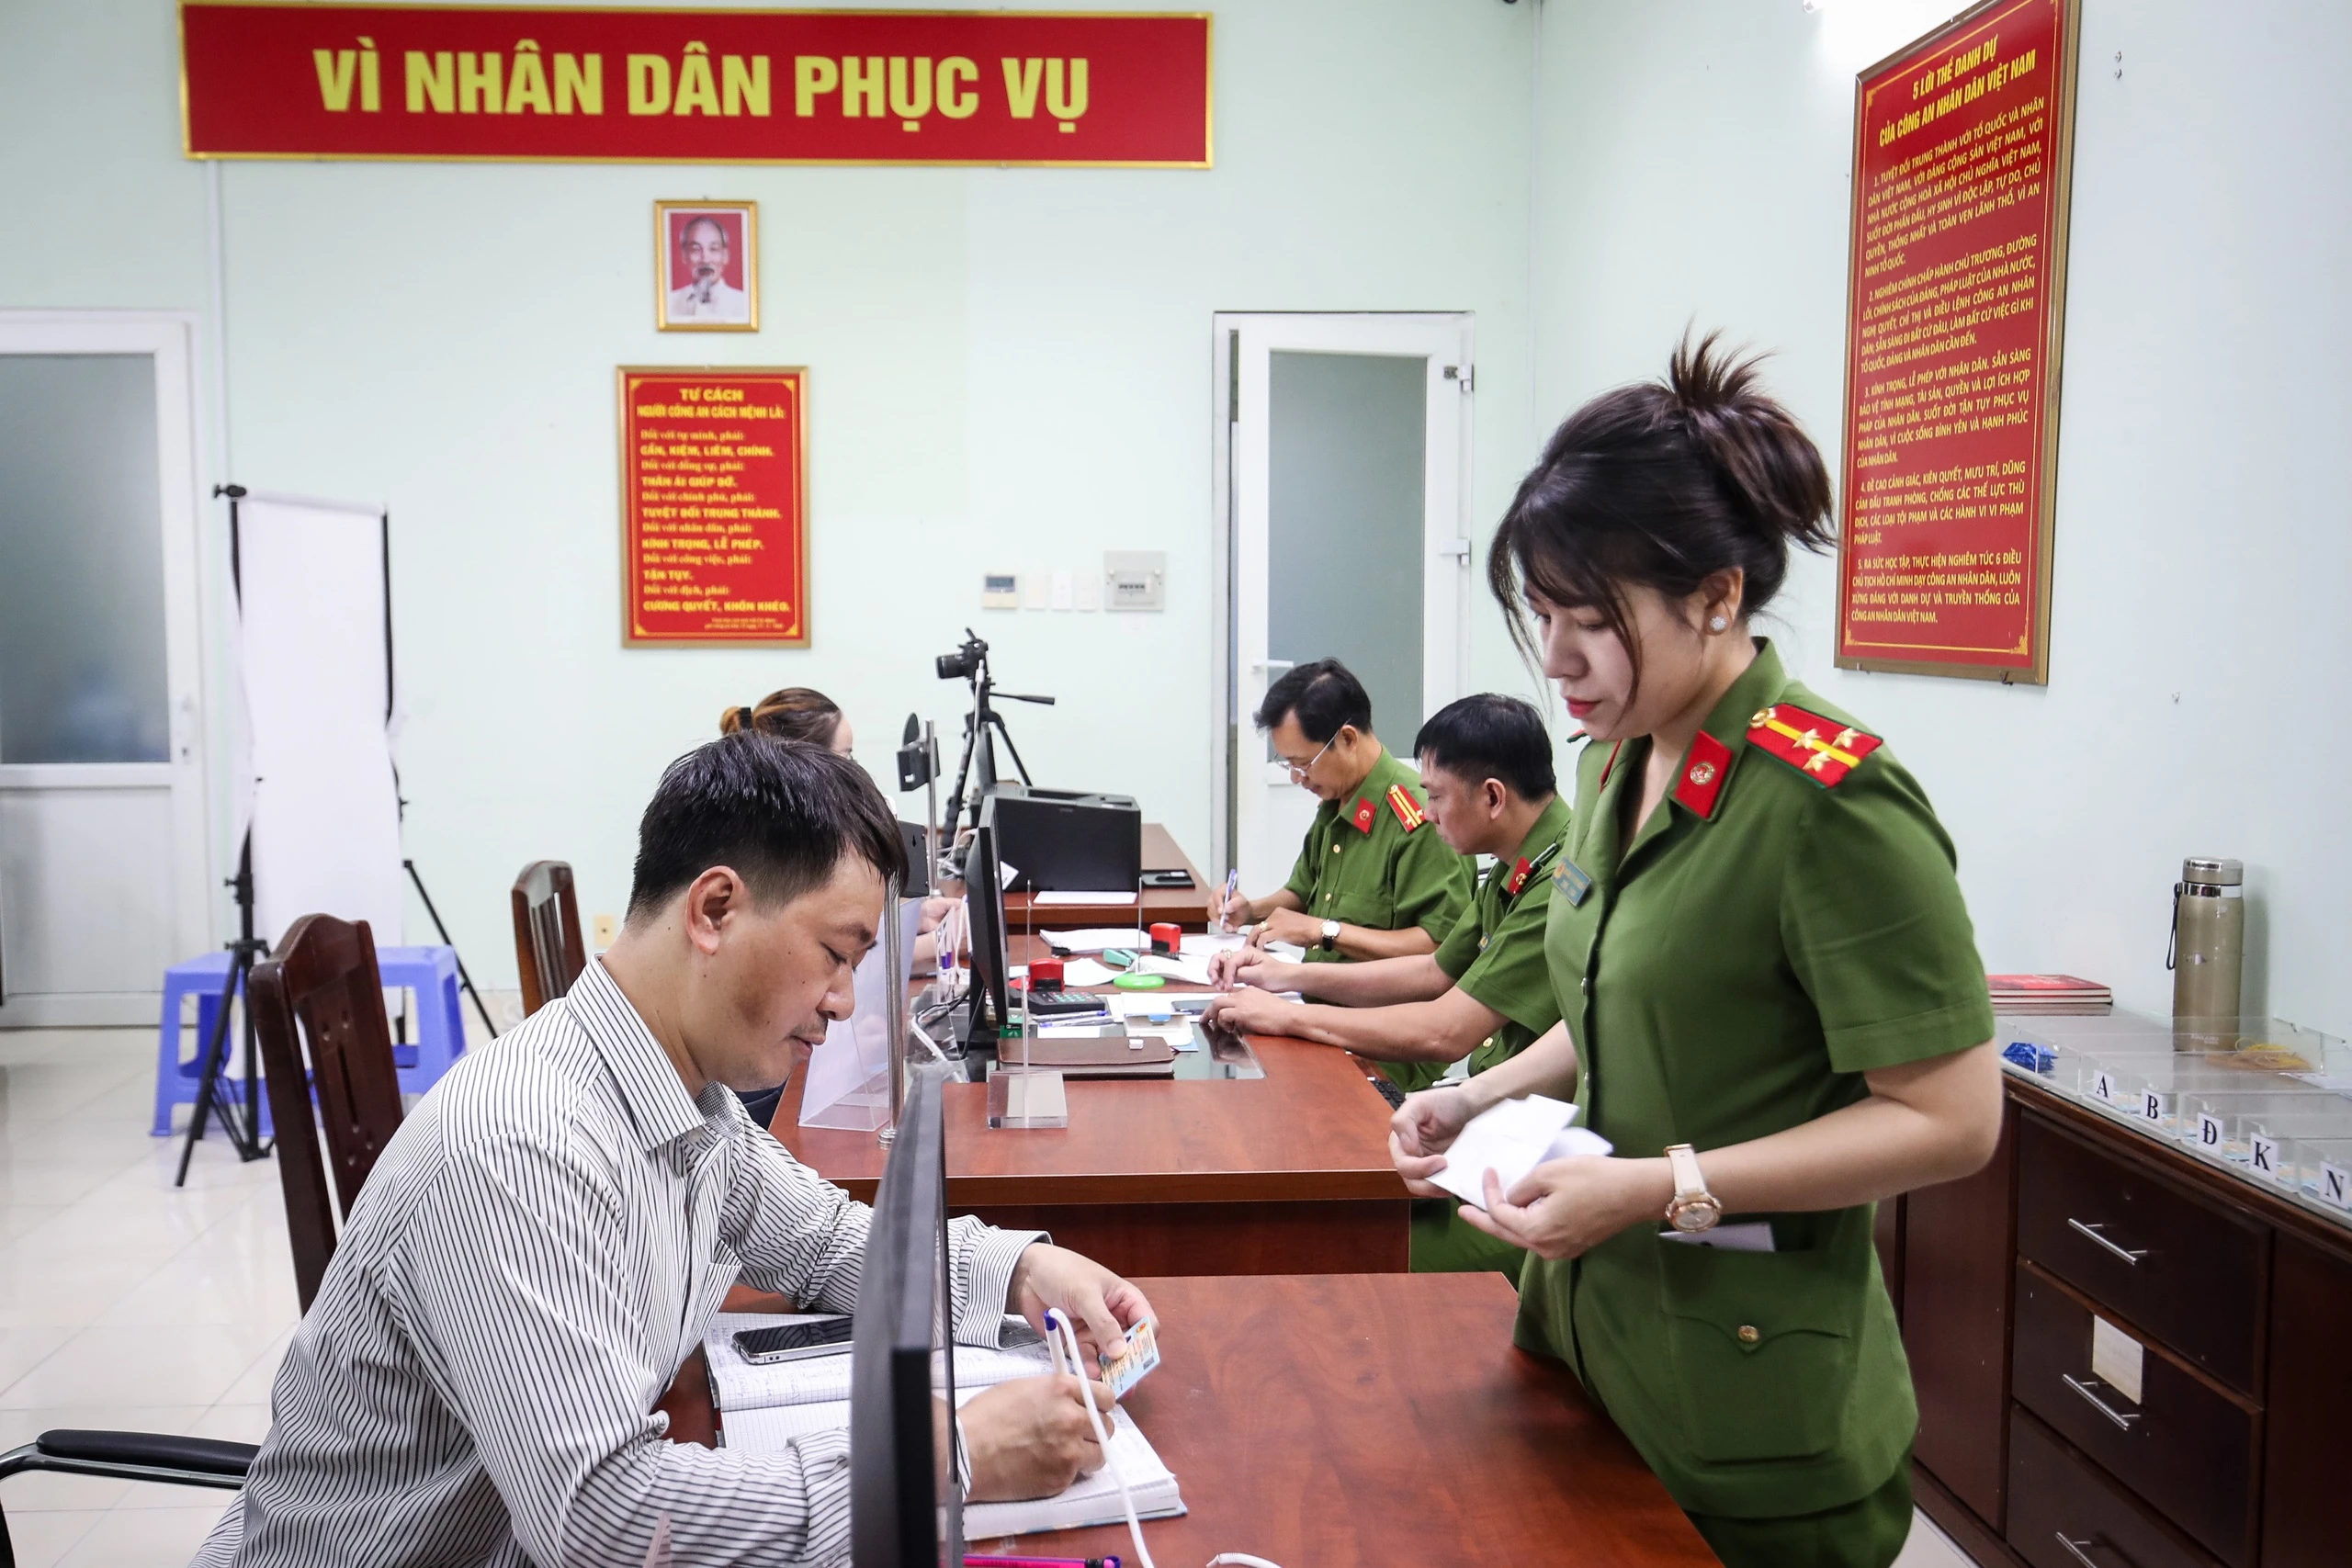 Thủ tục cấp giấy chứng nhận căn cước cho người gốc Việt Nam từ 1.7